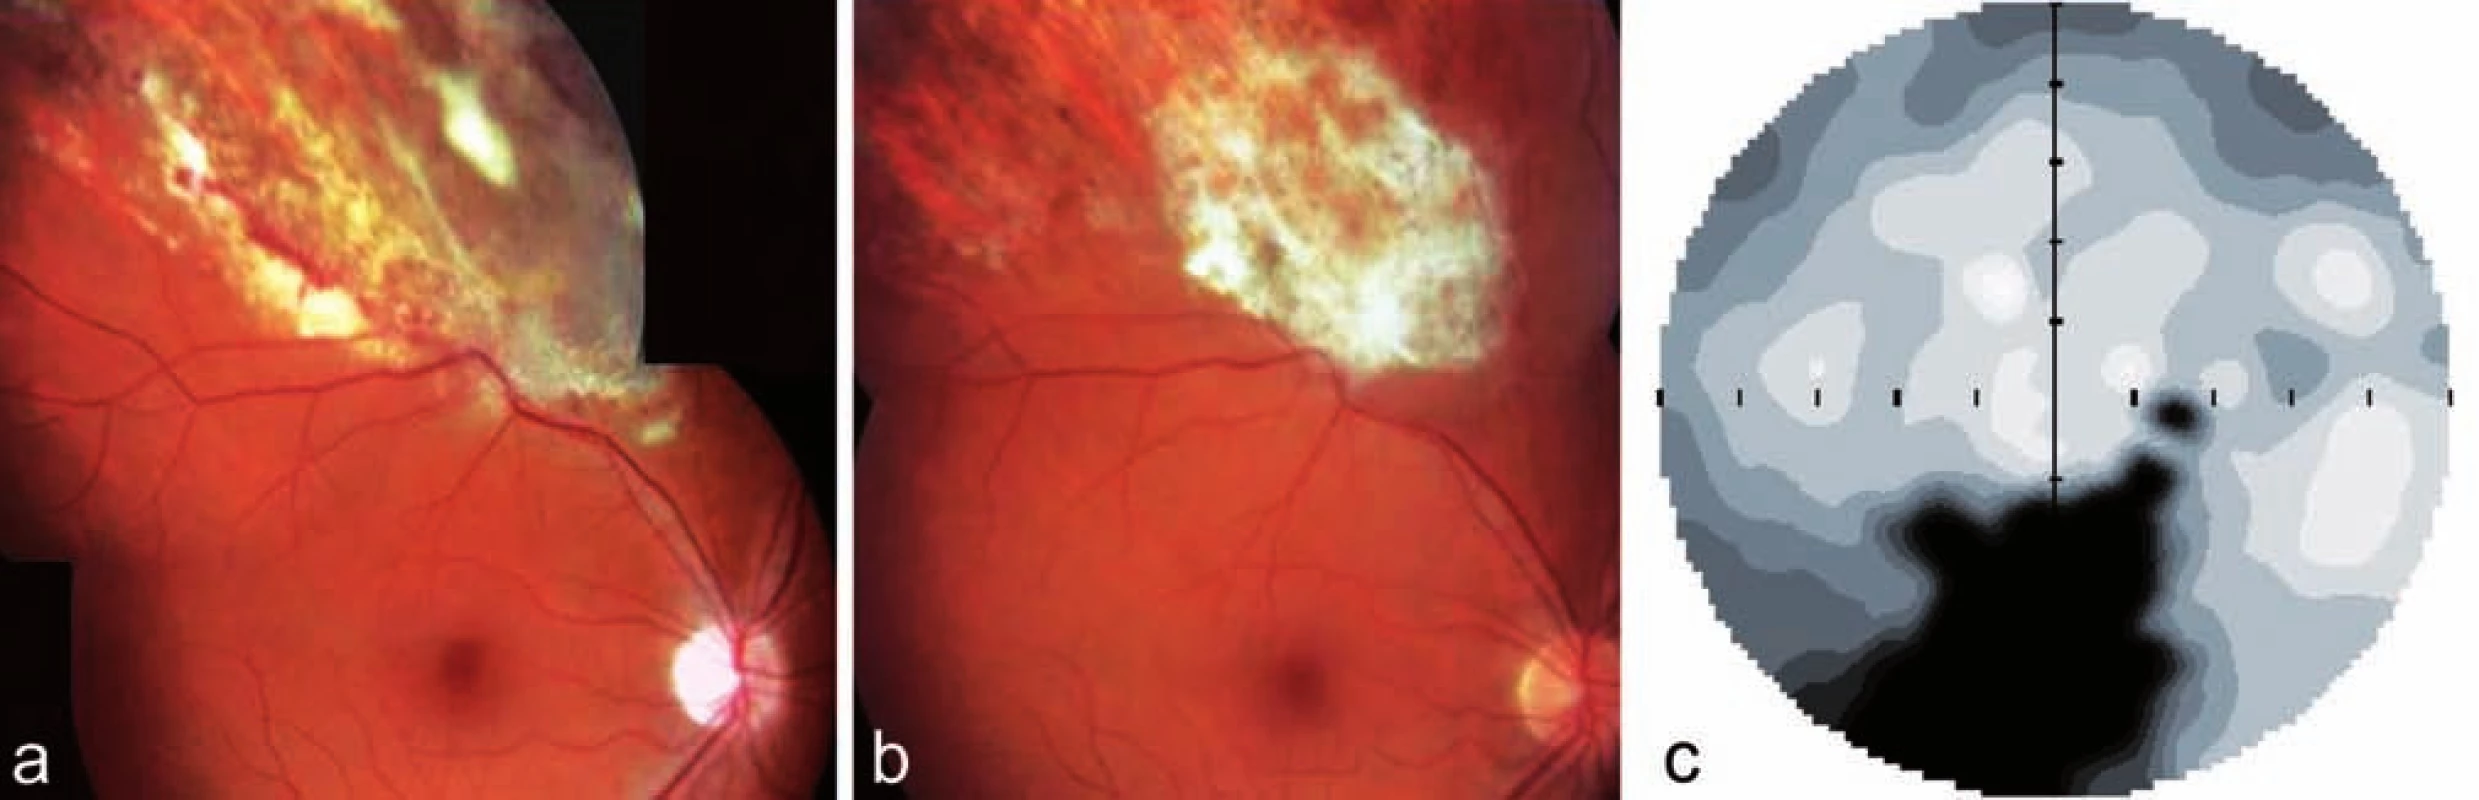 Klinický nález u pacienta z kazuistiky 2. Fotografie dokumentuje bělavá již resorbující se ložiska infiltrace a hemoragie s atrofizací sítnice v horním nazálním kvadrantu pravého oka u pacienta na celkové imunosupresi (Medrol + Cyklofosfamid) pro ulcerózní kolitidu a), klidná jizva pro proběhlé CMV retinitidě b), statická automatická perimetrie pravého oka s odpovídajícím výpadem v zorném poli c)